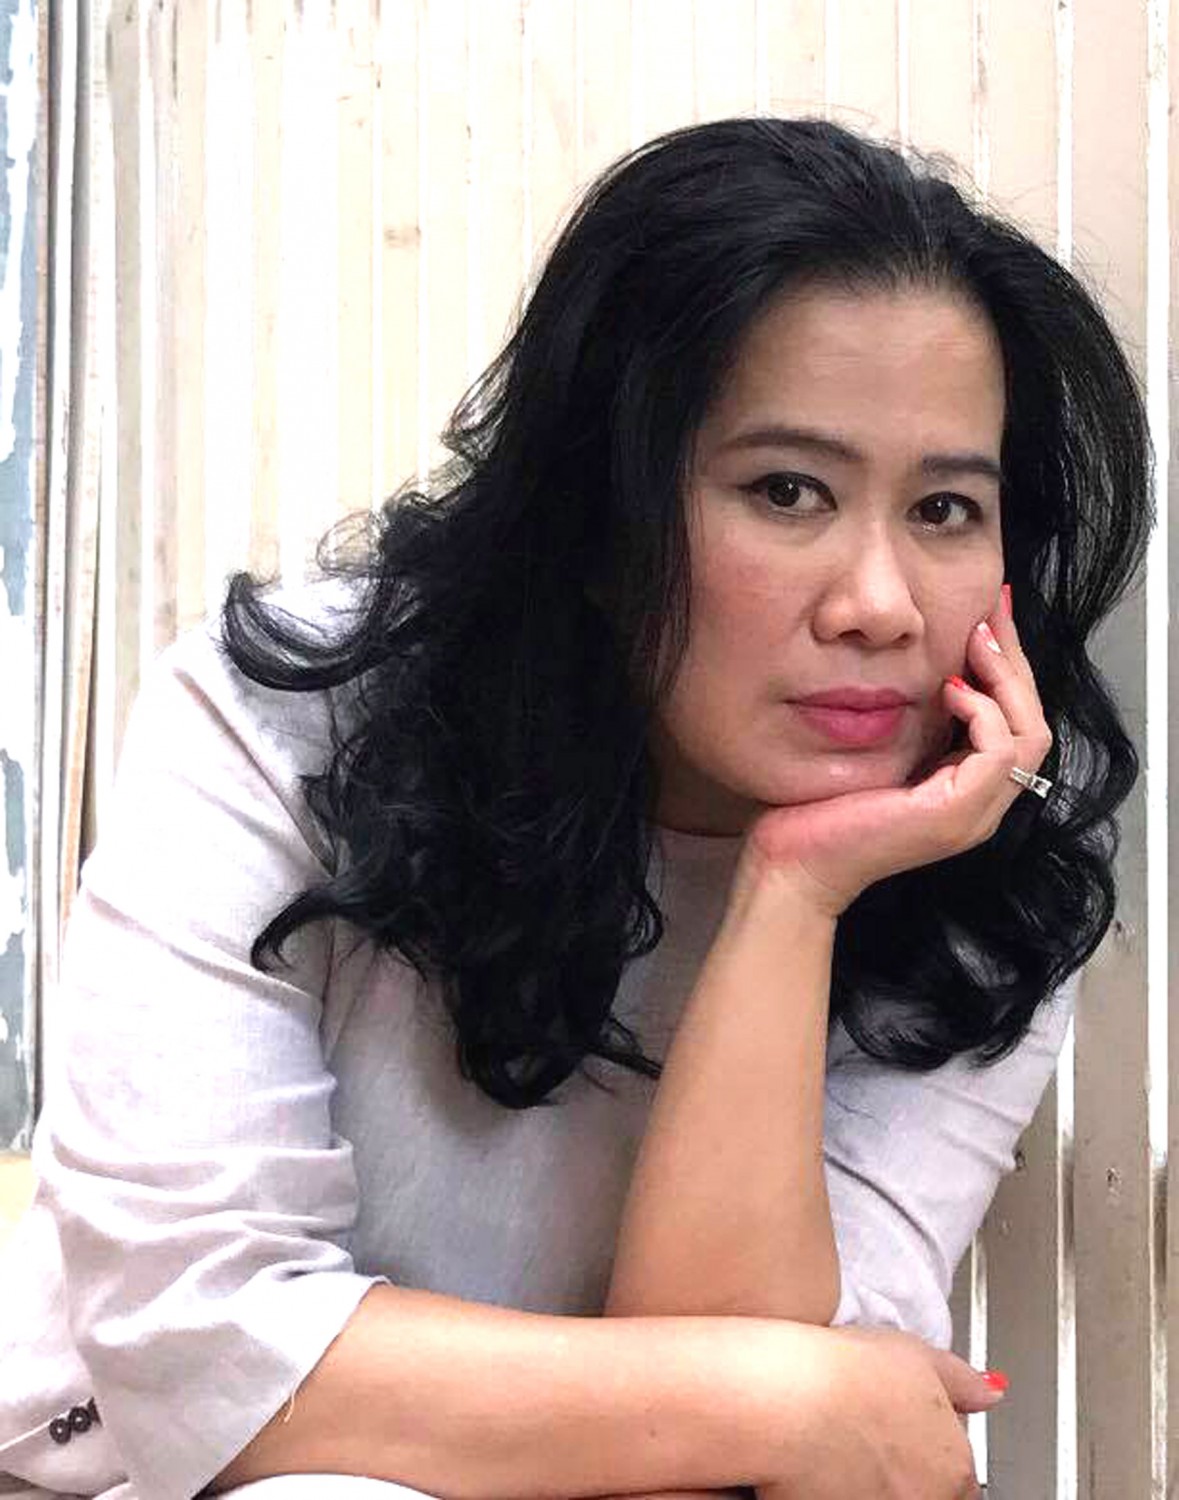 Nhà văn Nguyễn Thị Thu Huệ